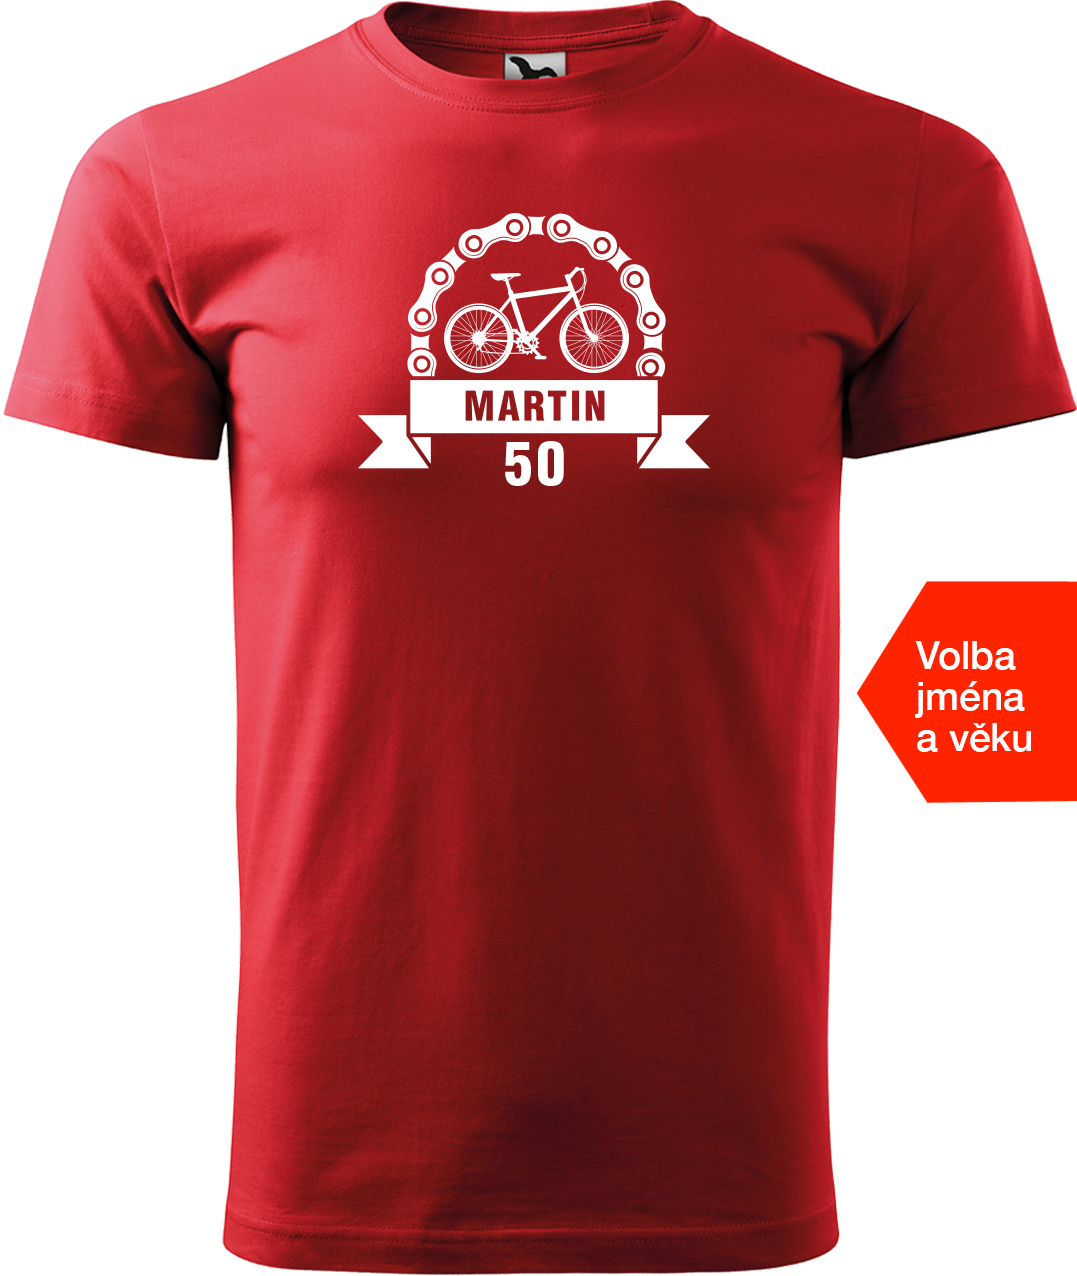 Pánské tričko pro cyklistu se jménem a věkem - Blahopřání Velikost: XL, Barva: Červená (07)